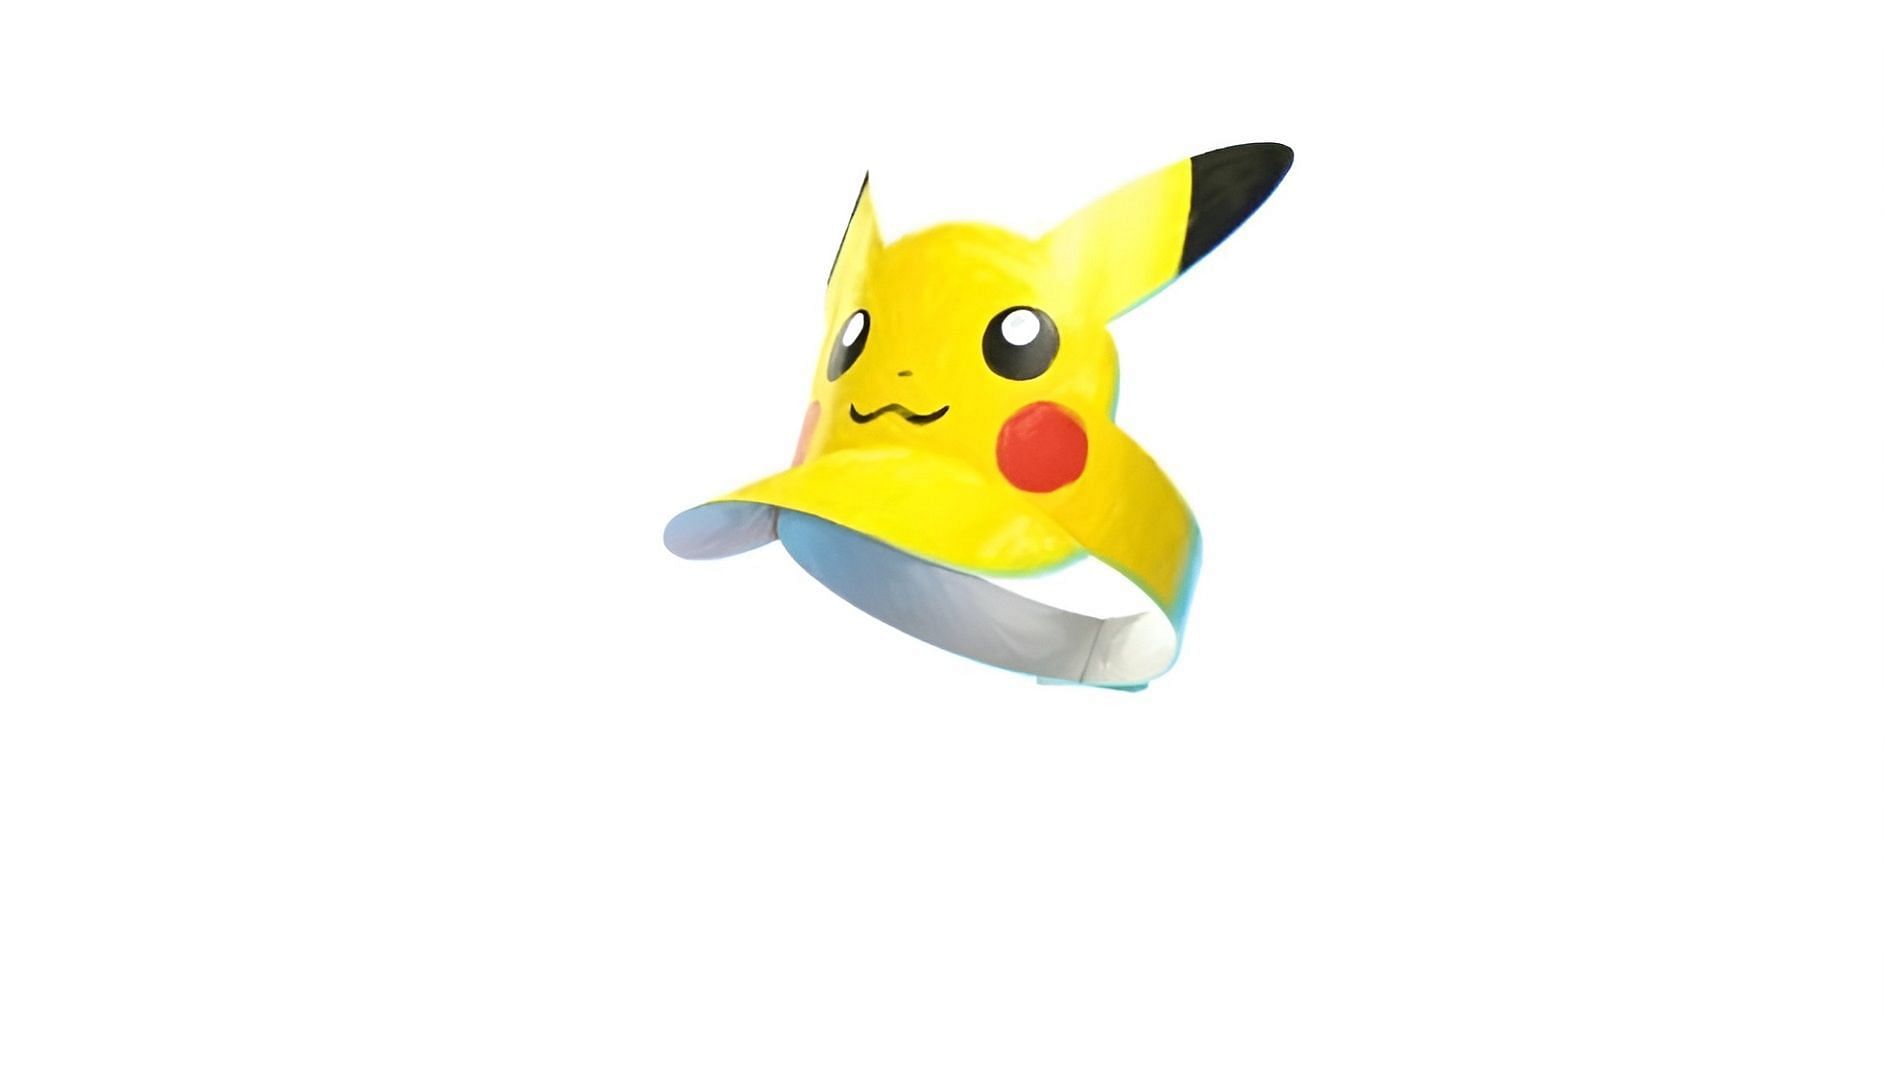 Il Pikachu Visor è uno dei tanti souvenir di Pokemon GO (Immagine via Serebii.net)